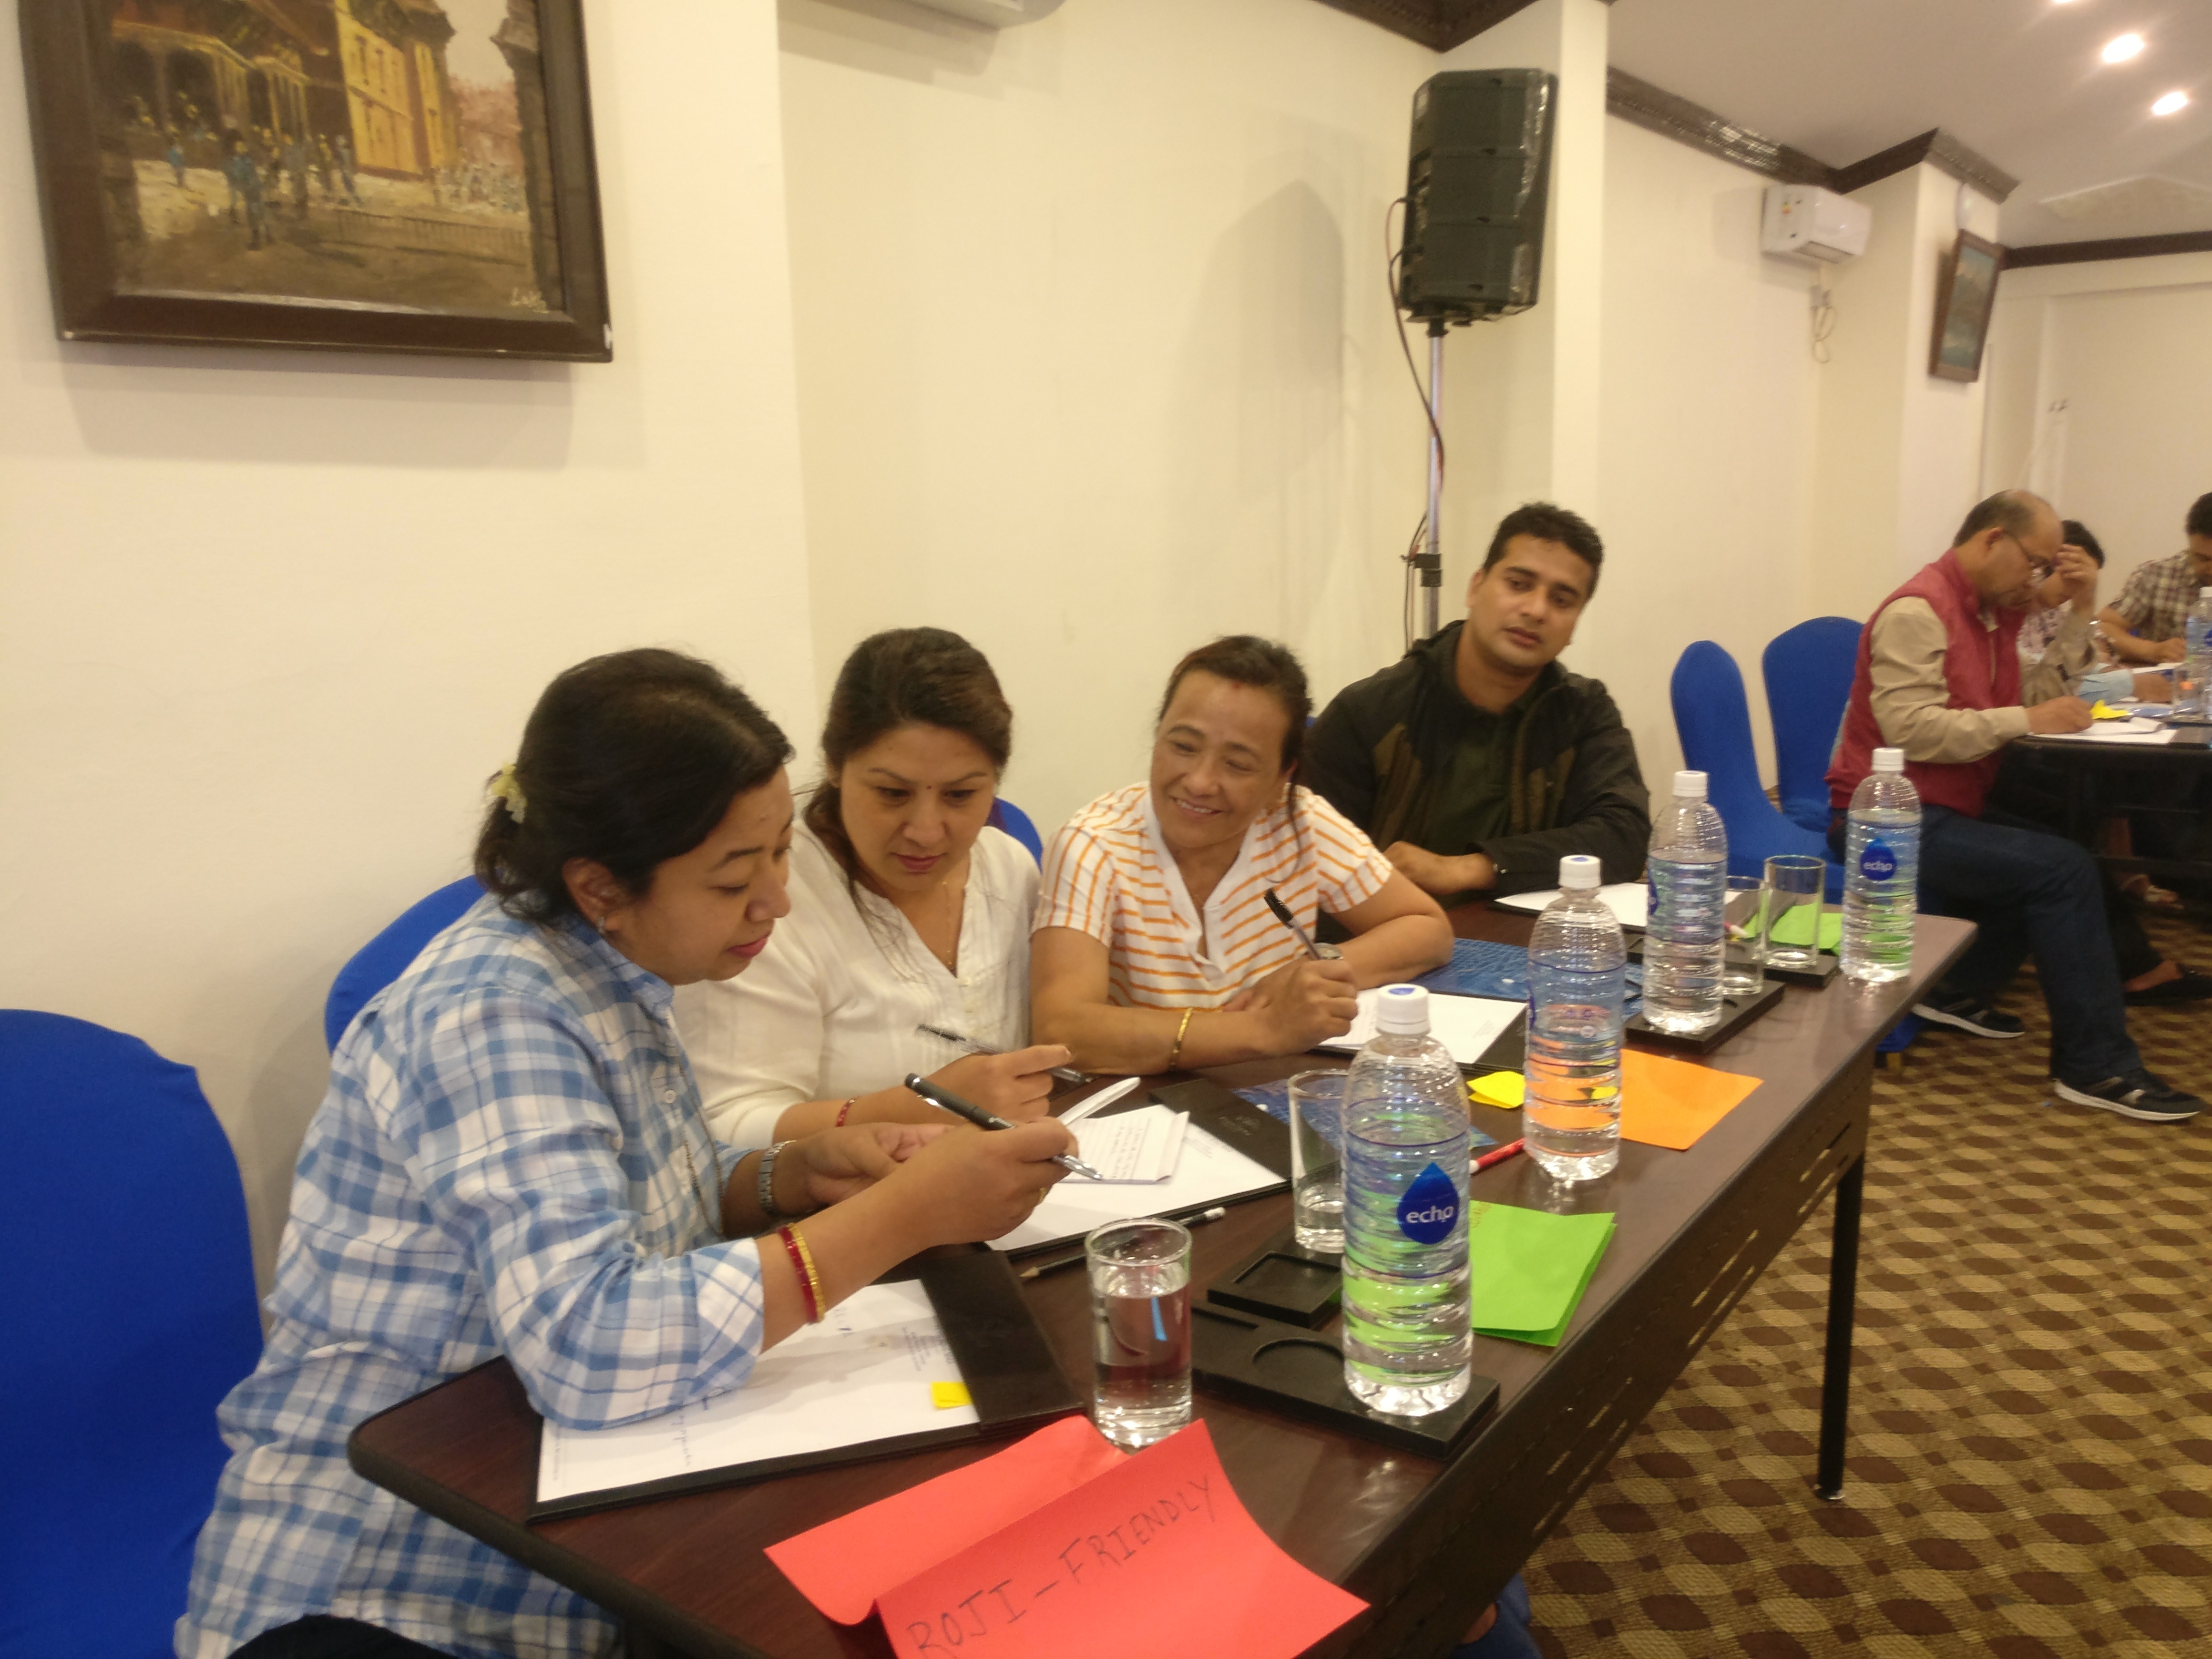 Workshop on Office Management & Effective Administrative Skills